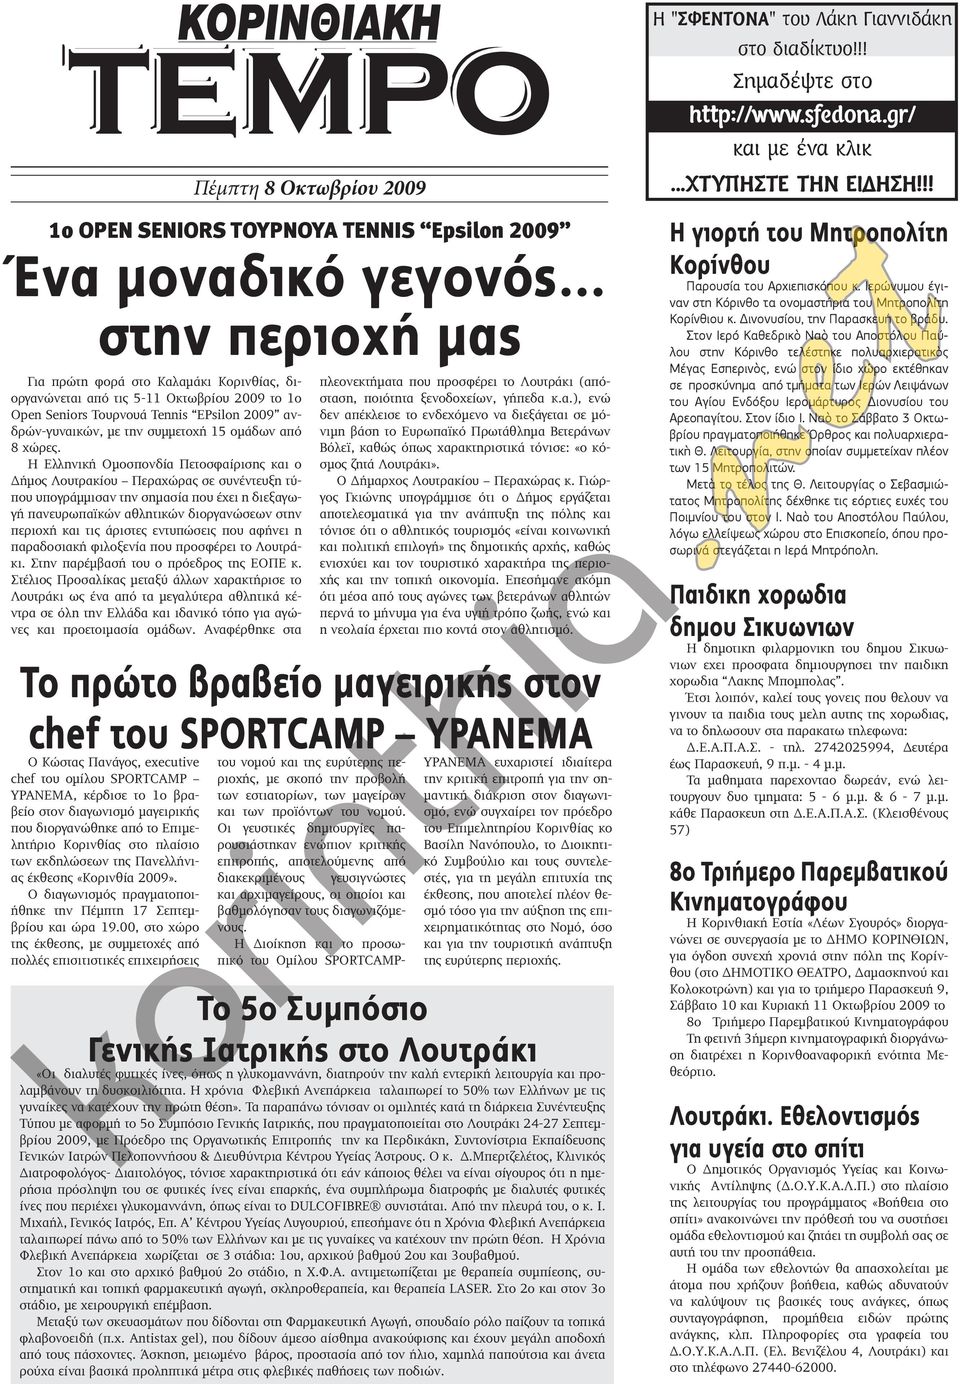 Η Ελληνική Ομοσπονδία Πετοσφαίρισης και ο Δήμος Λουτρακίου Περαχώρας σε συνέντευξη τύπου υπογράμμισαν την σημασία που έχει η διεξαγωγή πανευρωπαϊκών αθλητικών διοργανώσεων στην περιοχή και τις